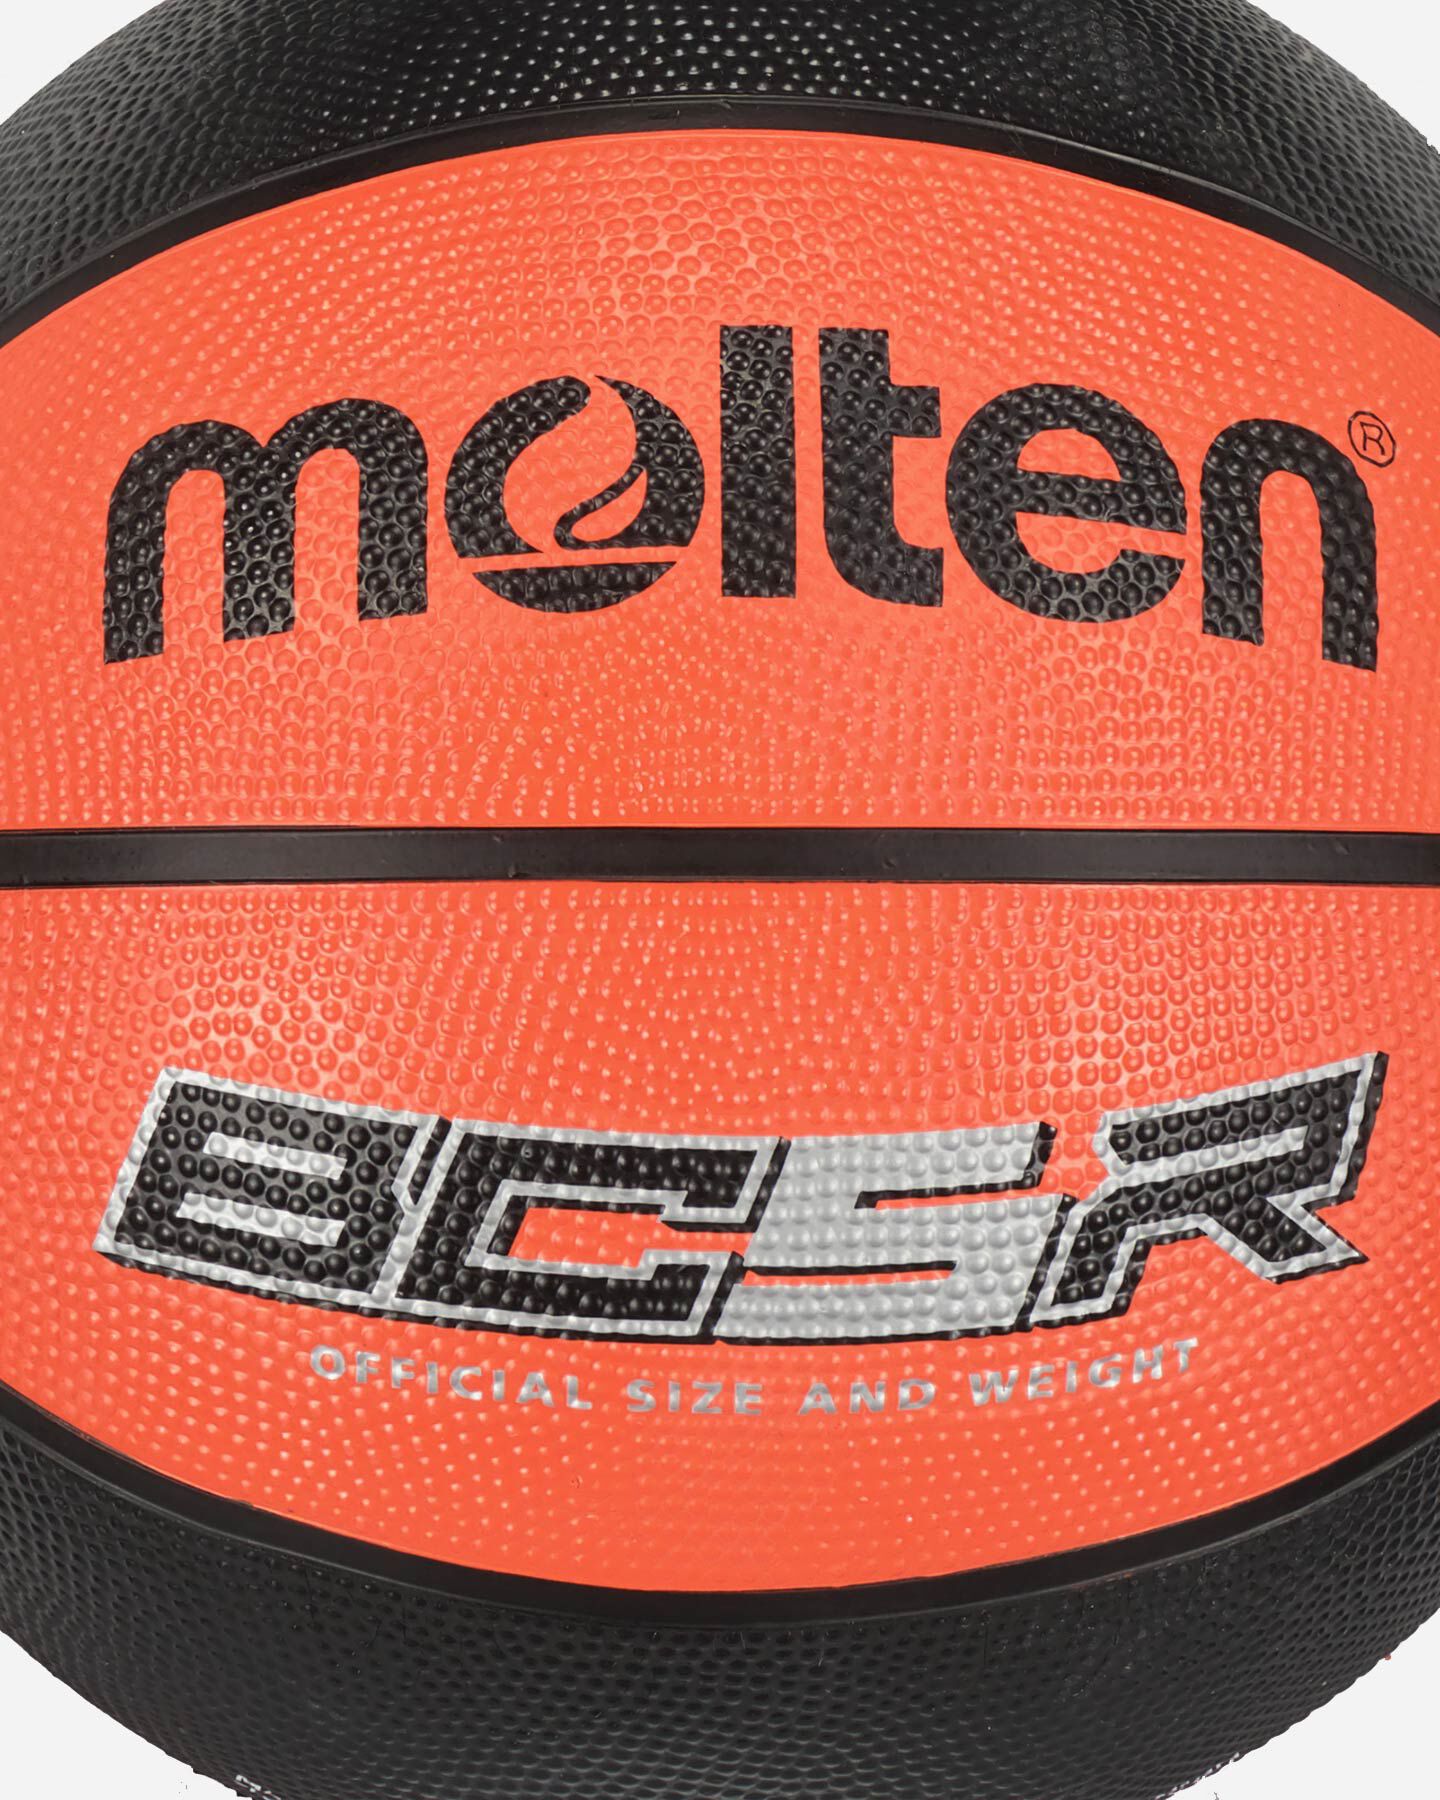  Pallone basket MOLTEN BC5R SZ.5  S4127204|UNI|5 scatto 1